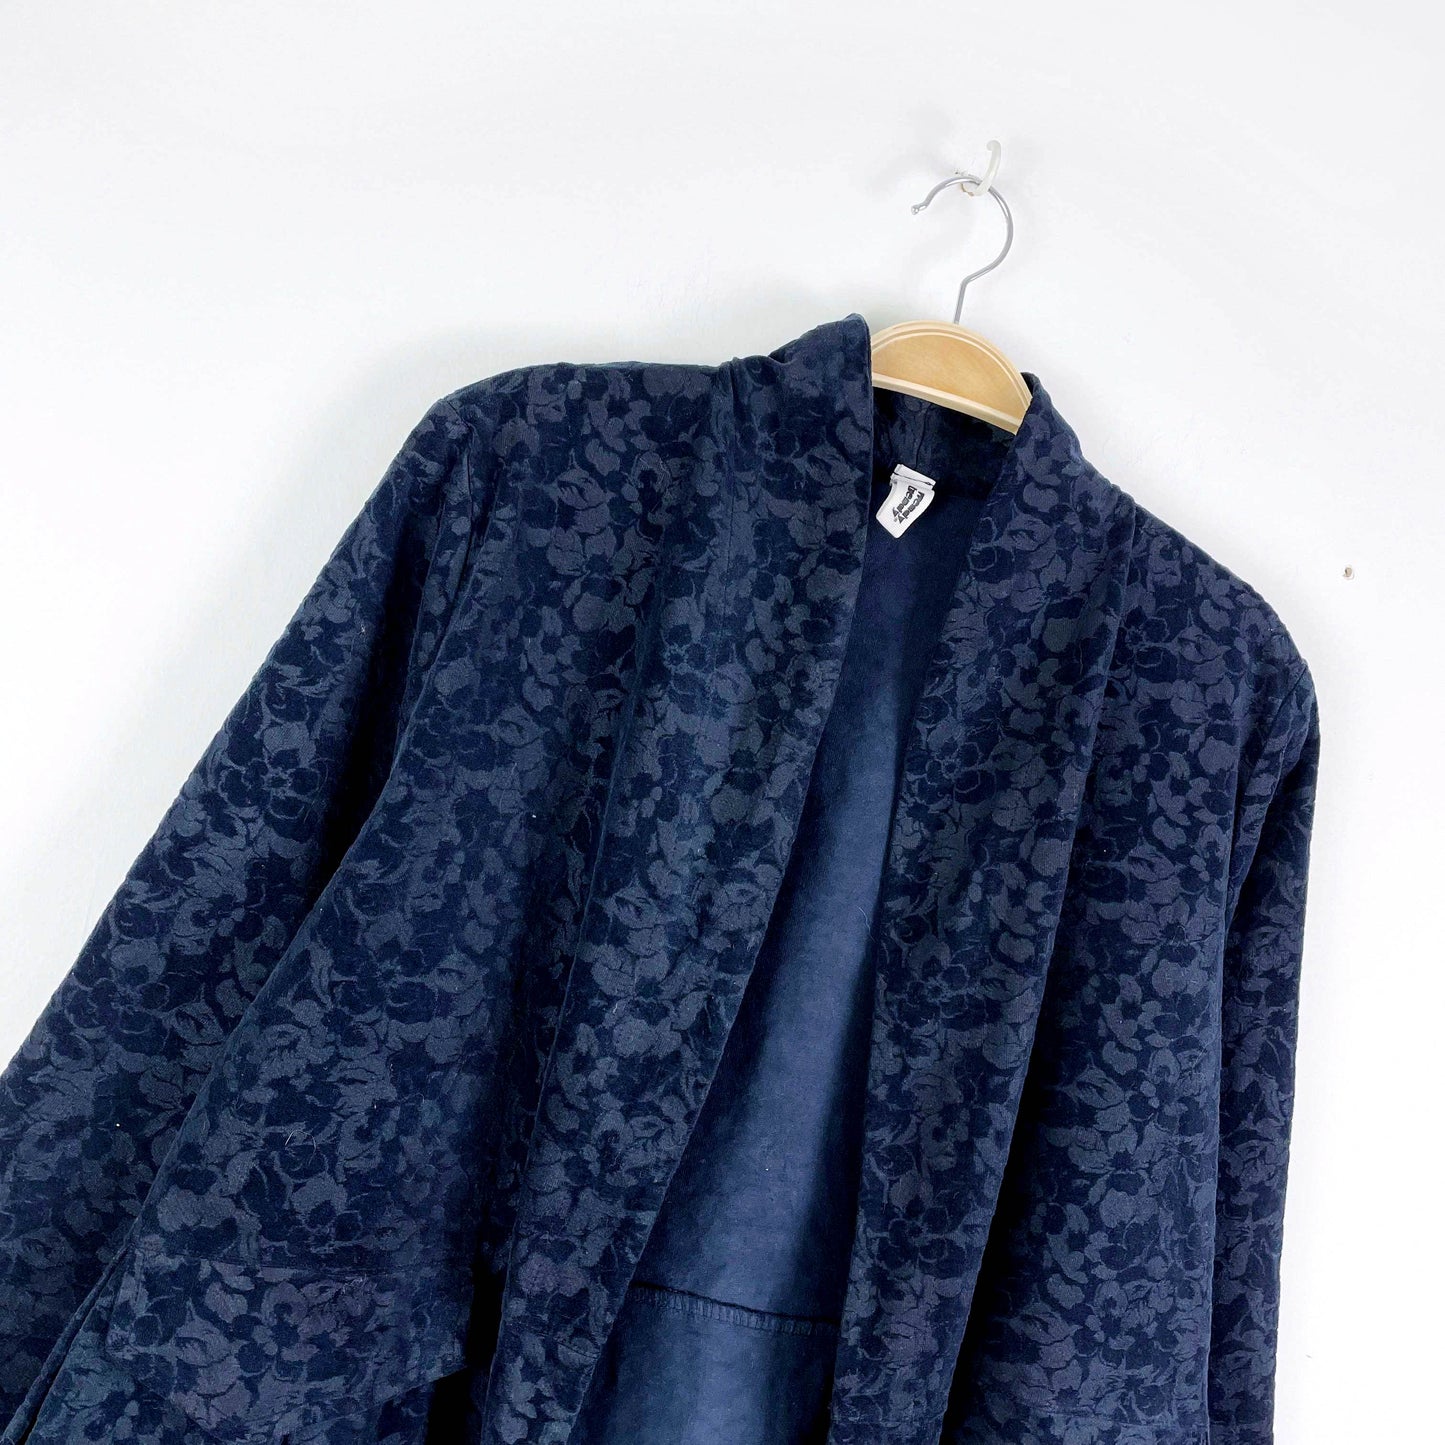 wendy trendy velvet damask duster jacket